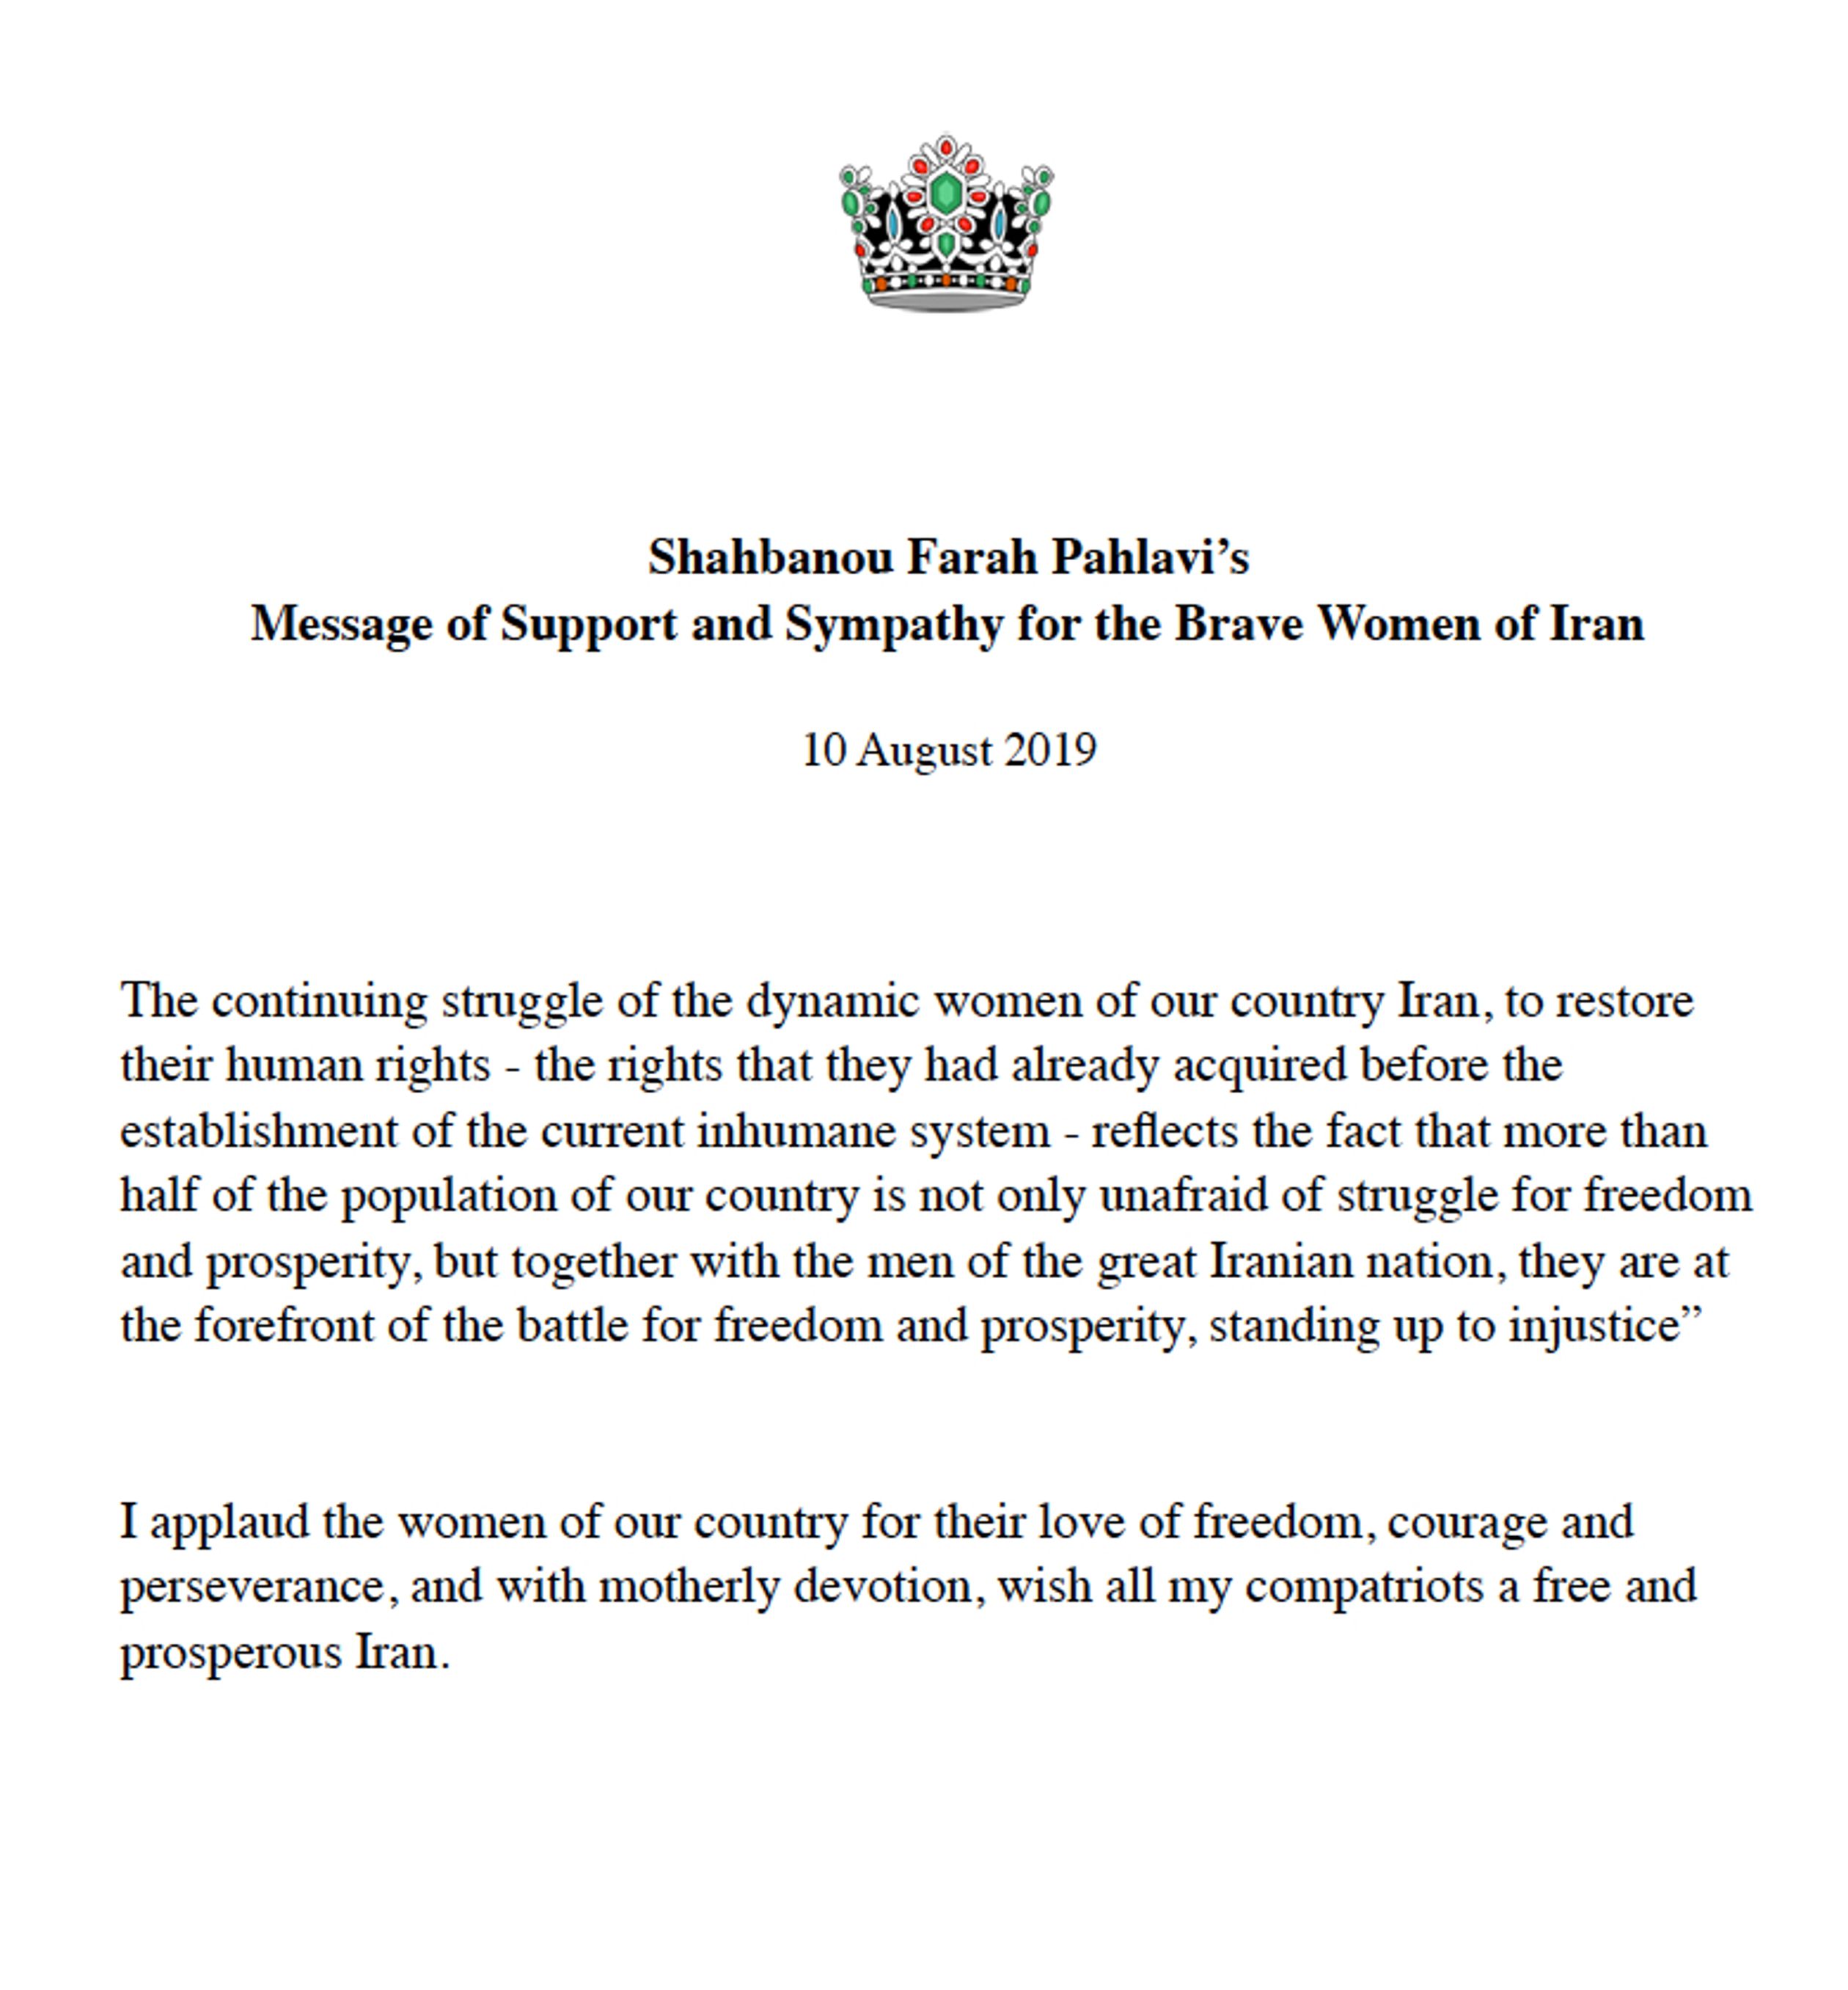 Statement voor de rechten van vrouwen in Iran, augustus 2019.